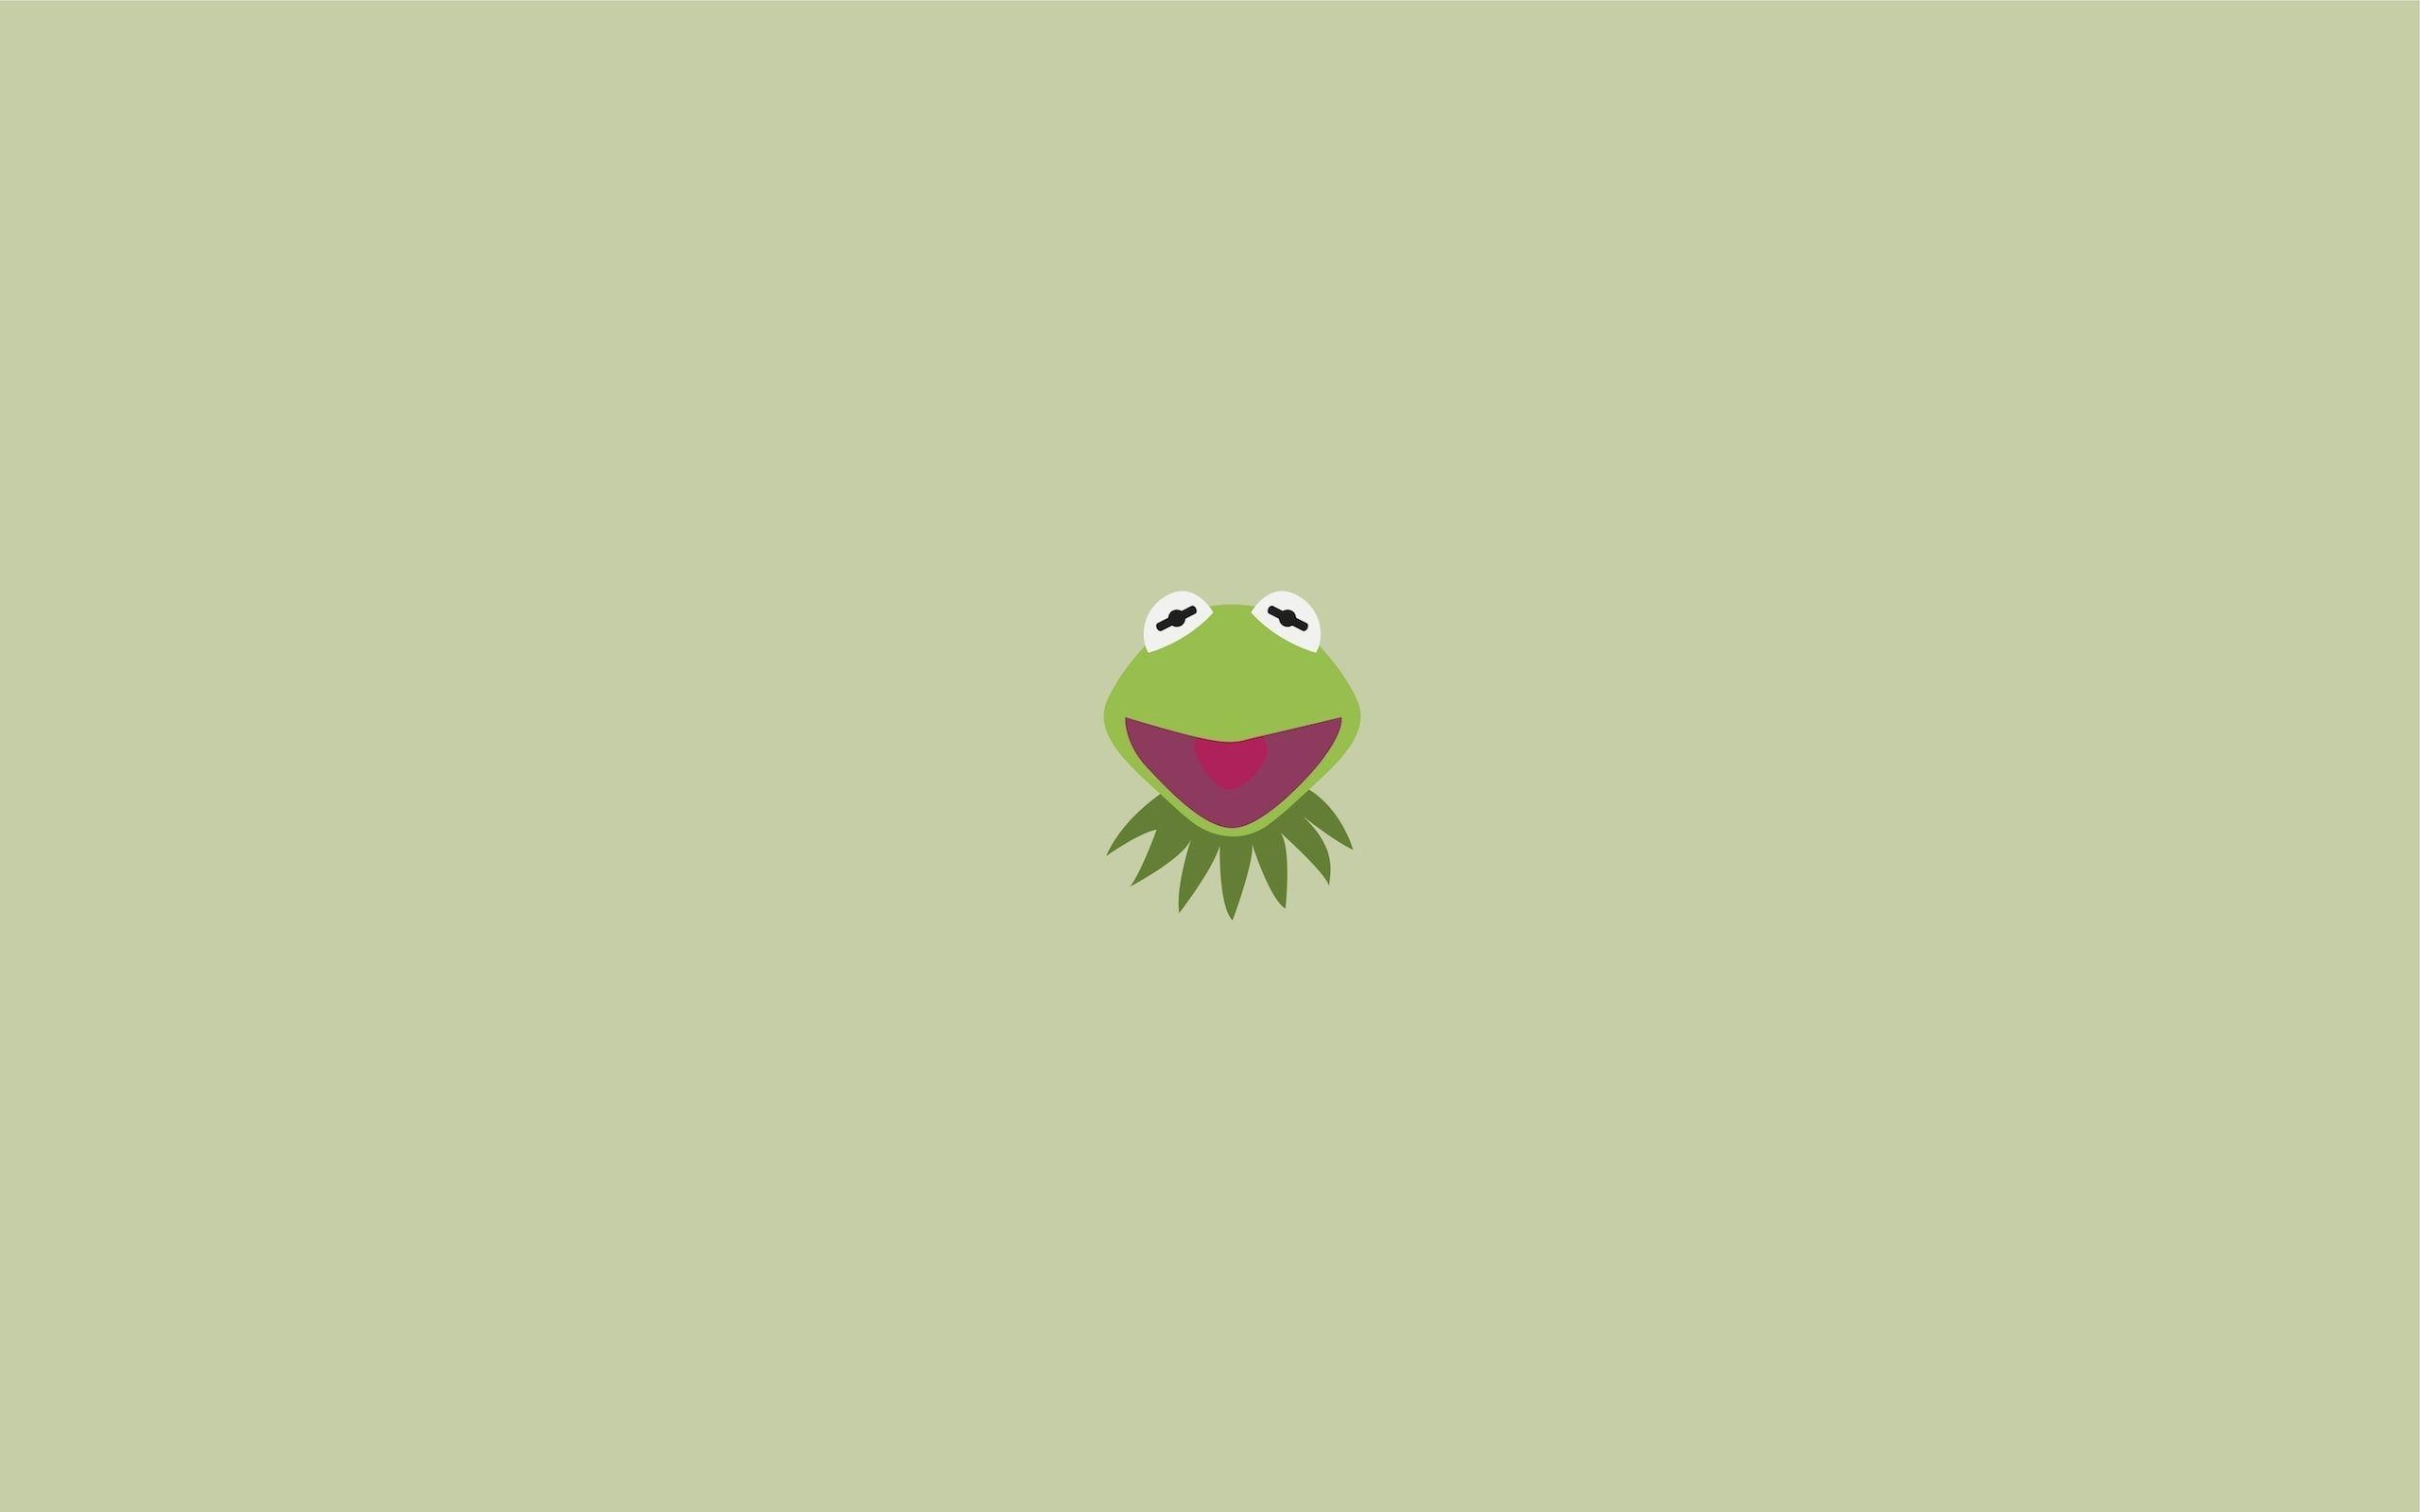 Hình nền Kermit (Kermit wallpaper): Bạn đang tìm kiếm một hình nền để trang trí không gian làm việc hoặc điện thoại của mình sao cho vui nhộn và ngộ nghĩnh? Hãy xem qua bộ sưu tập hình nền Kermit đầy màu sắc và đáng yêu này! Chắc chắn bạn sẽ tìm được bức hình nền ưa thích của mình.